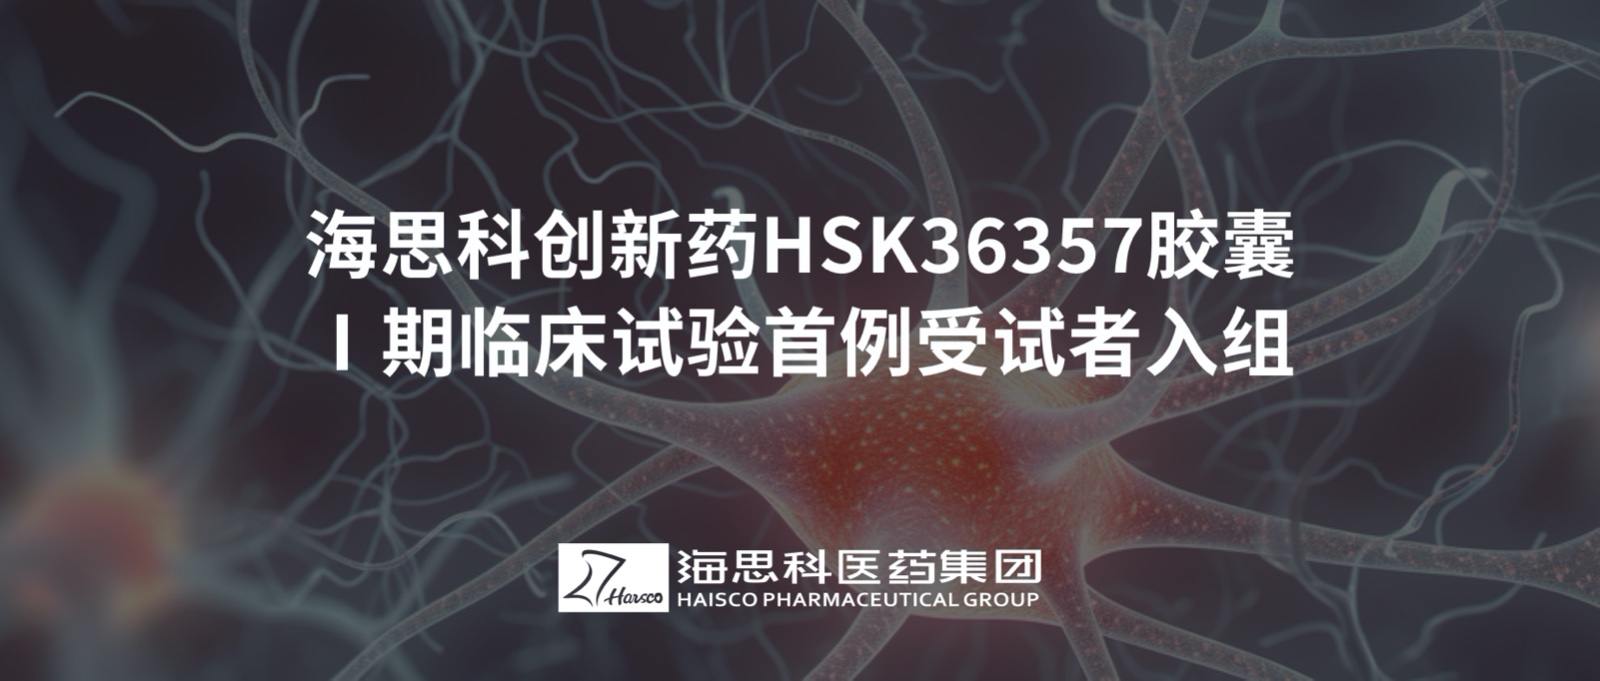 明升ms88创新药HSK36357胶囊Ⅰ期临床试验首例受试者入组